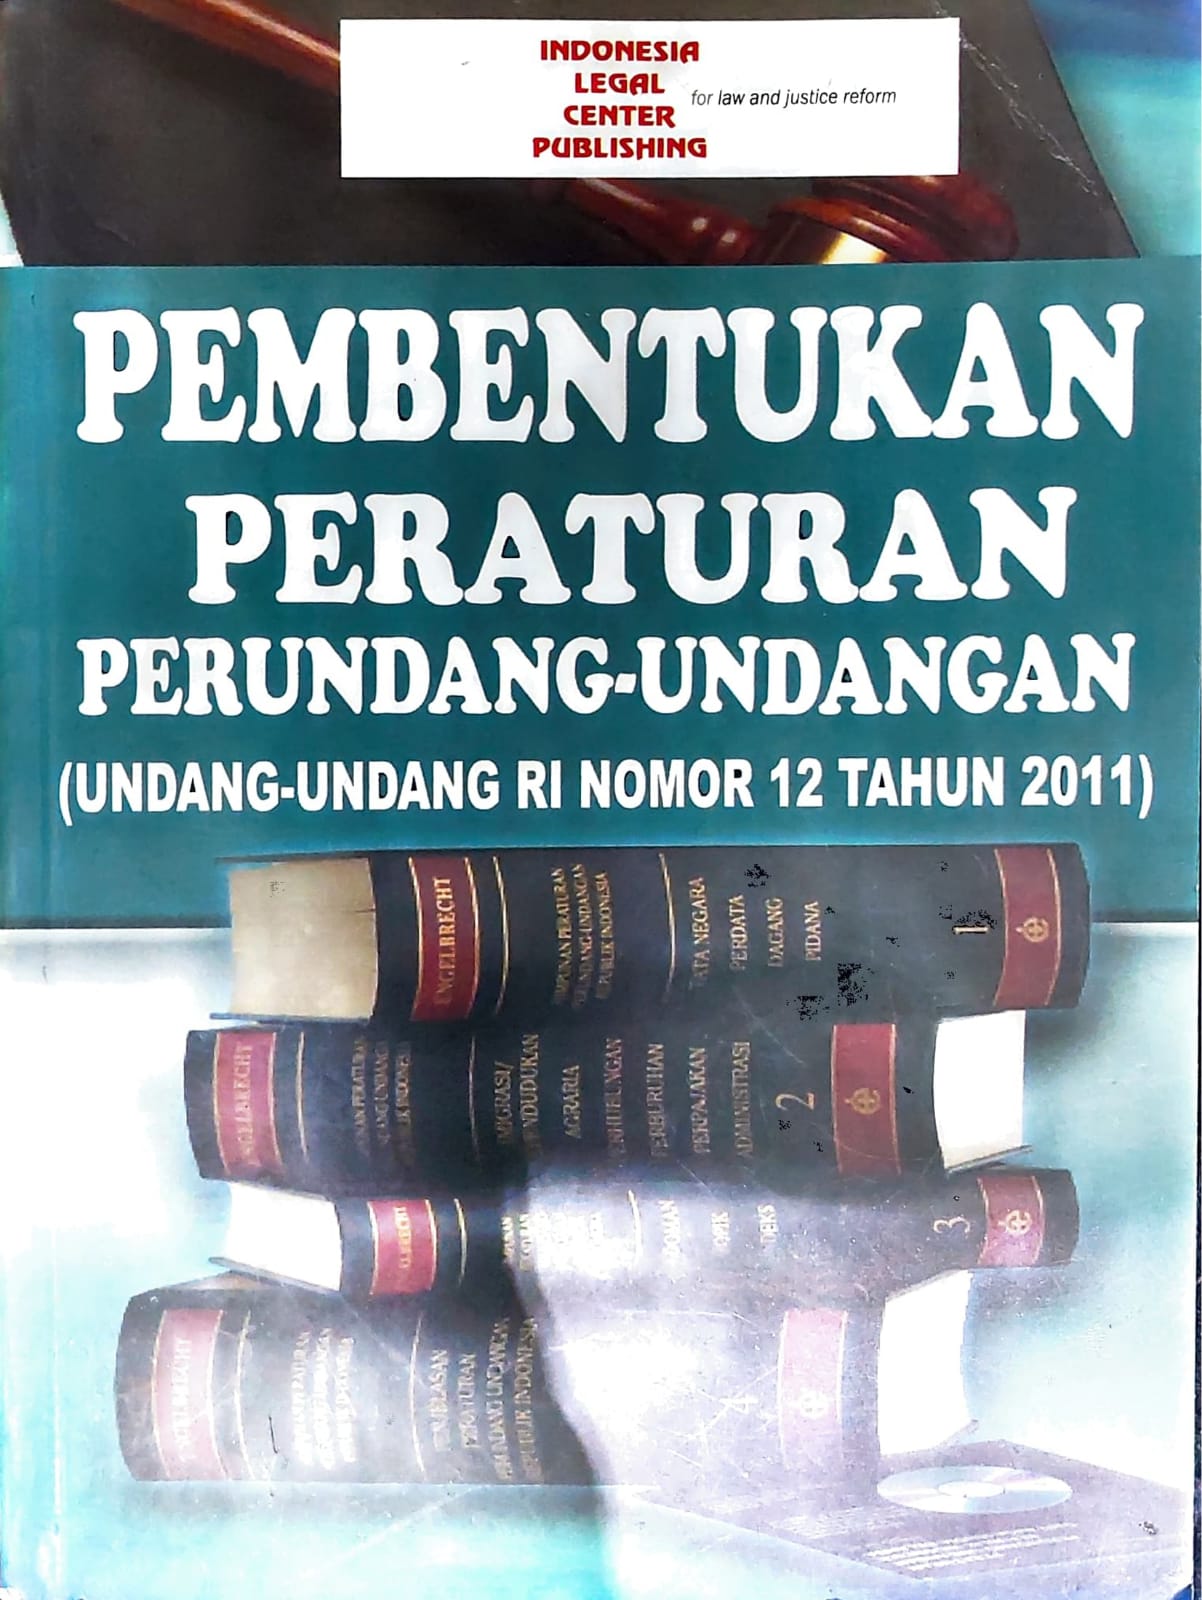 Pembentukan peraturan perundang-undangan (undang-undang ri nomor 12 tahun 2011)